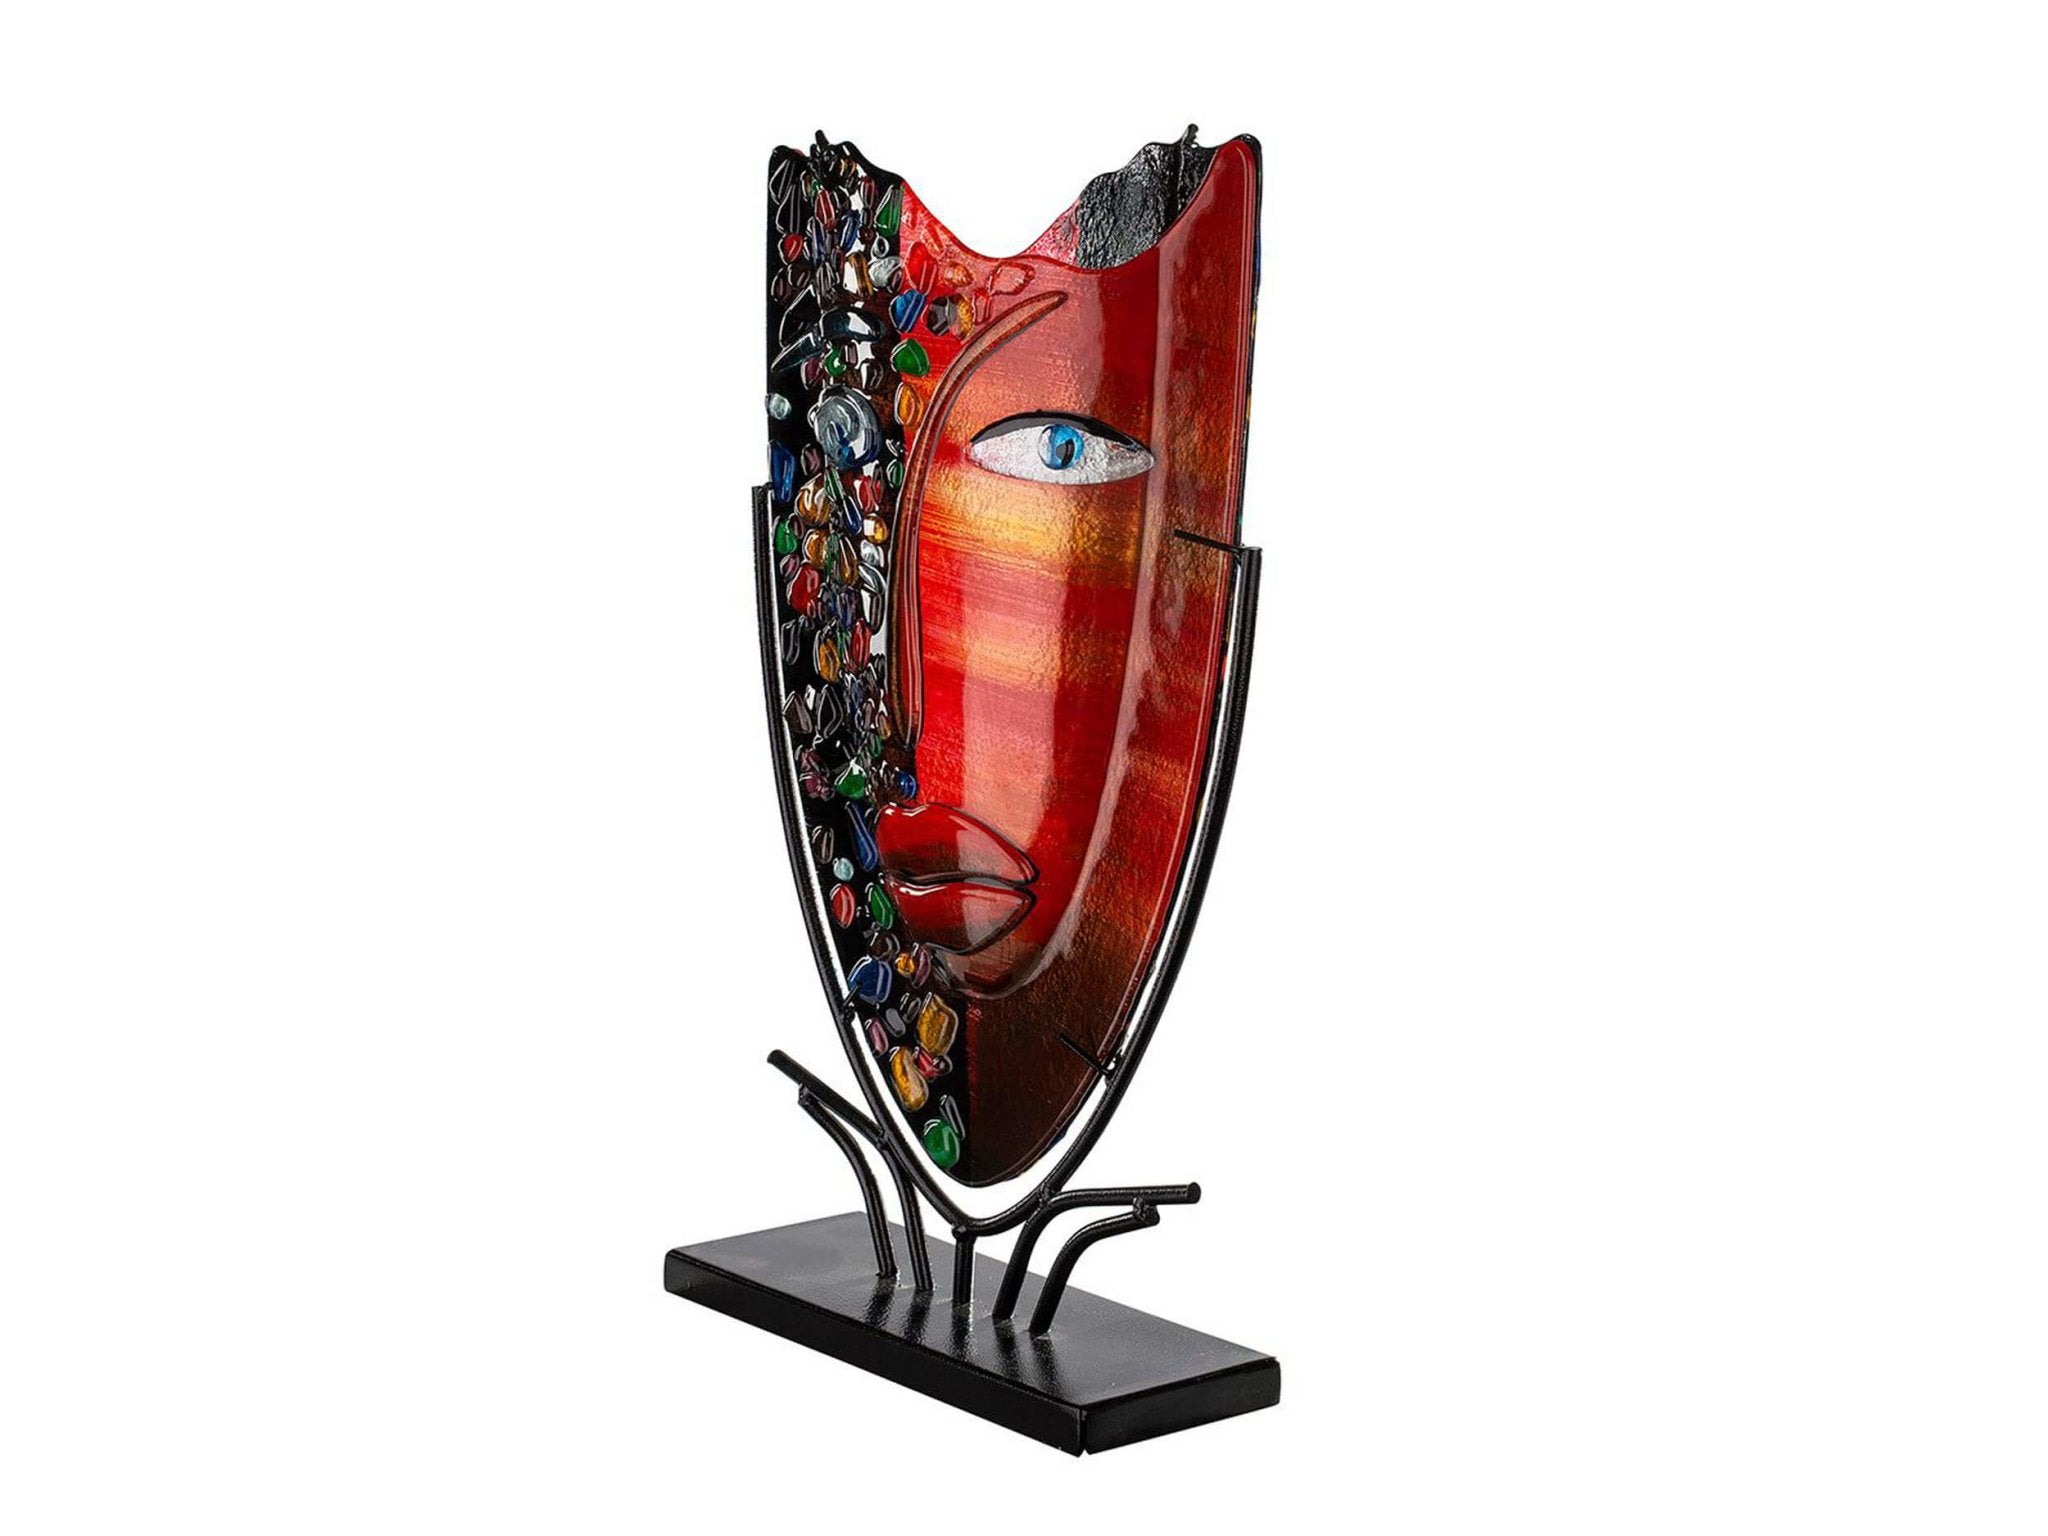 Rode glaskunst vaas met gezicht motief in houder